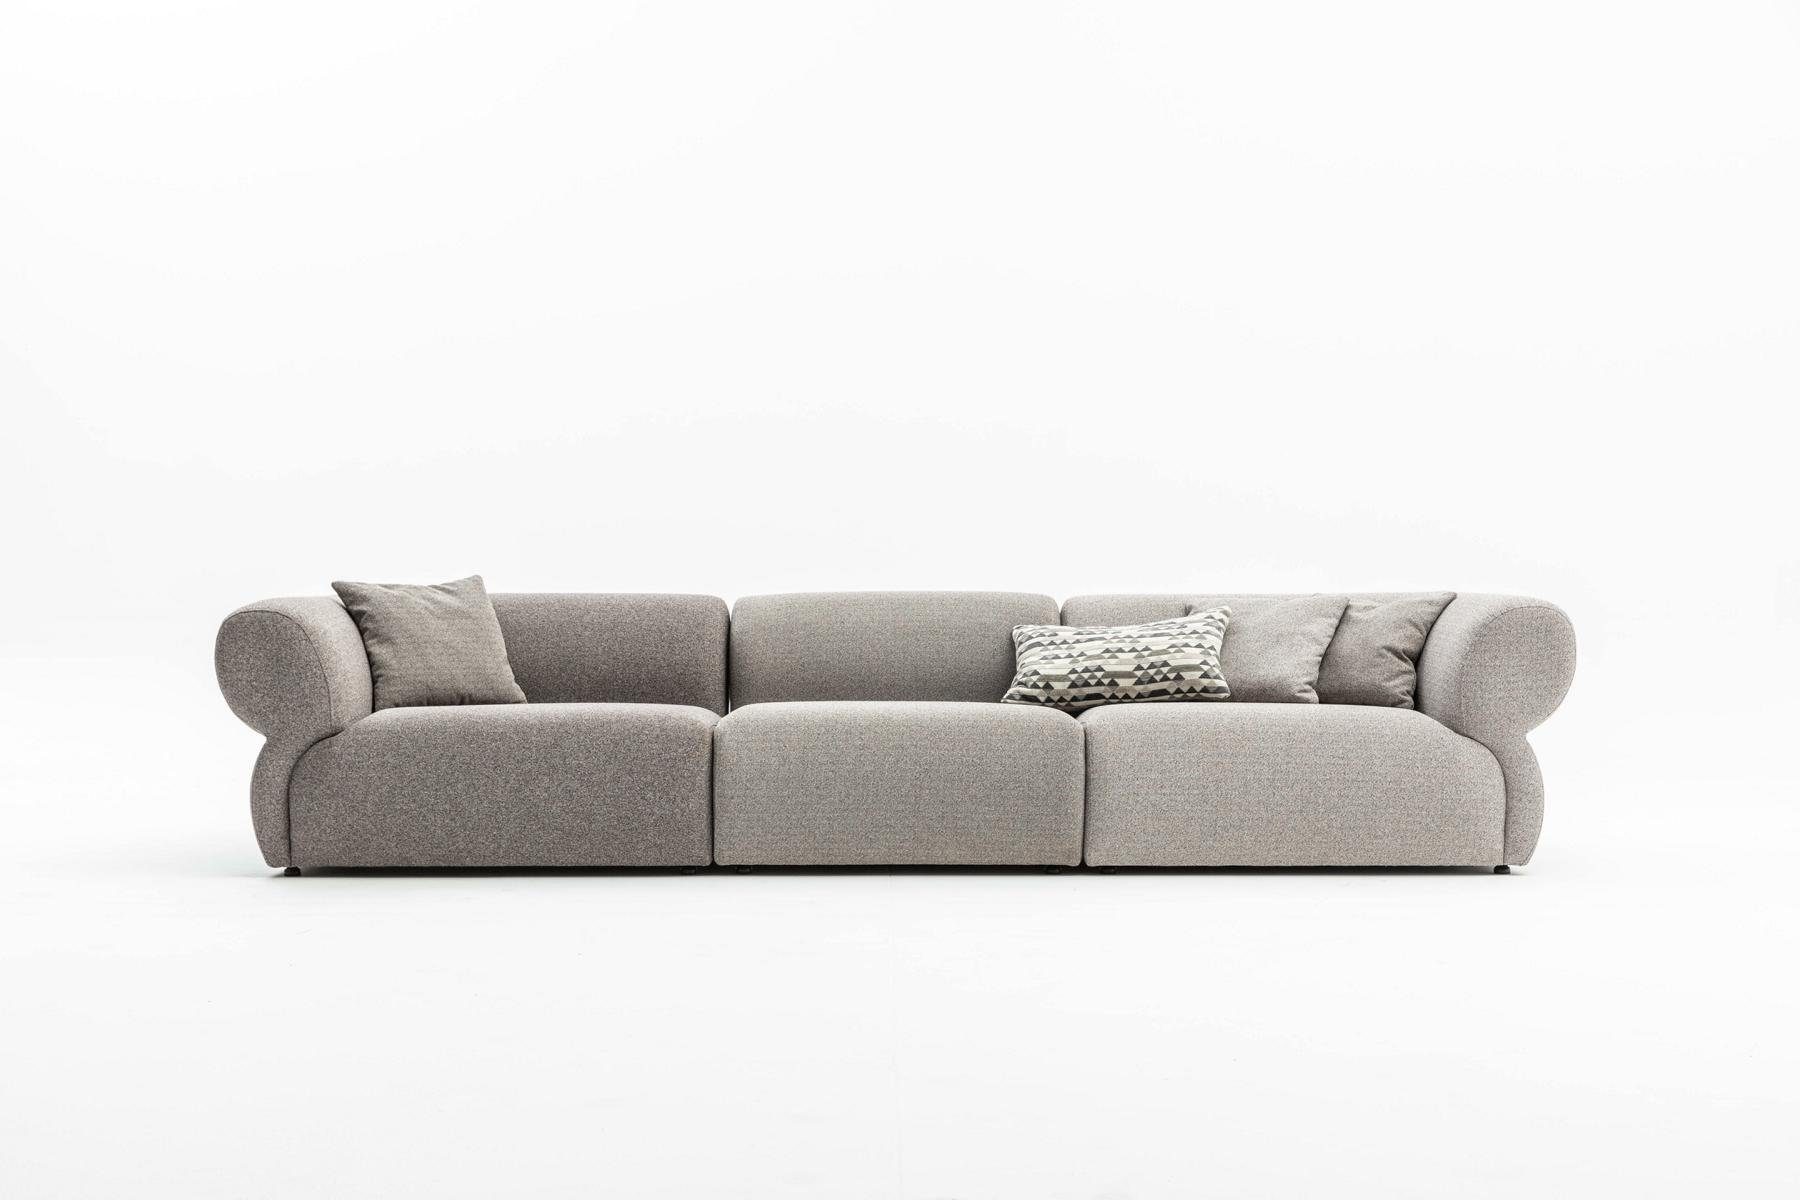 370cm, Made 5 Luxus Big-Sofa Sofa JVmoebel Wohnzimmer Grau Couch in Möbel Europe Design Sitzer